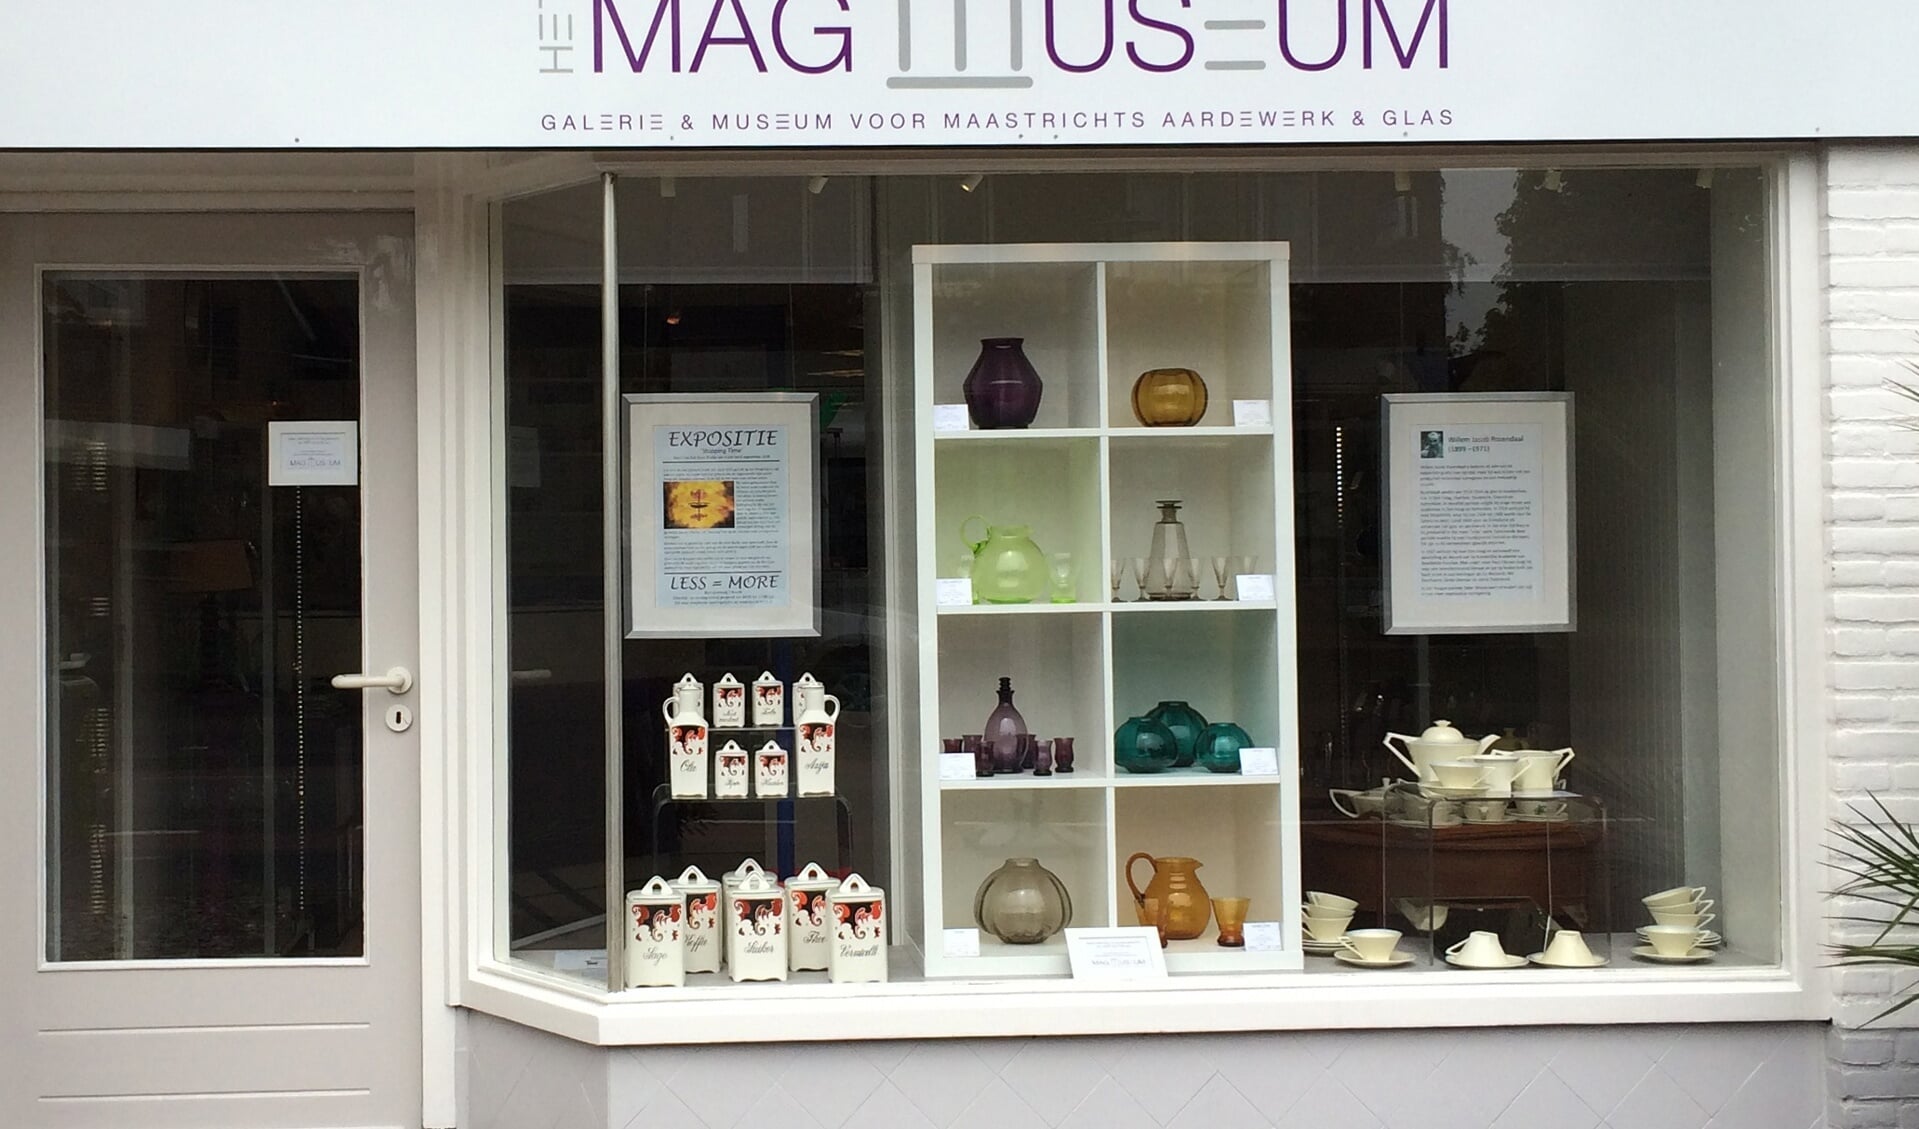 De nieuwe naam is geworden “het MAG museum”, waarbij MAG staat voor Maastrichts Aardewerk en Glas. Foto: PR. 